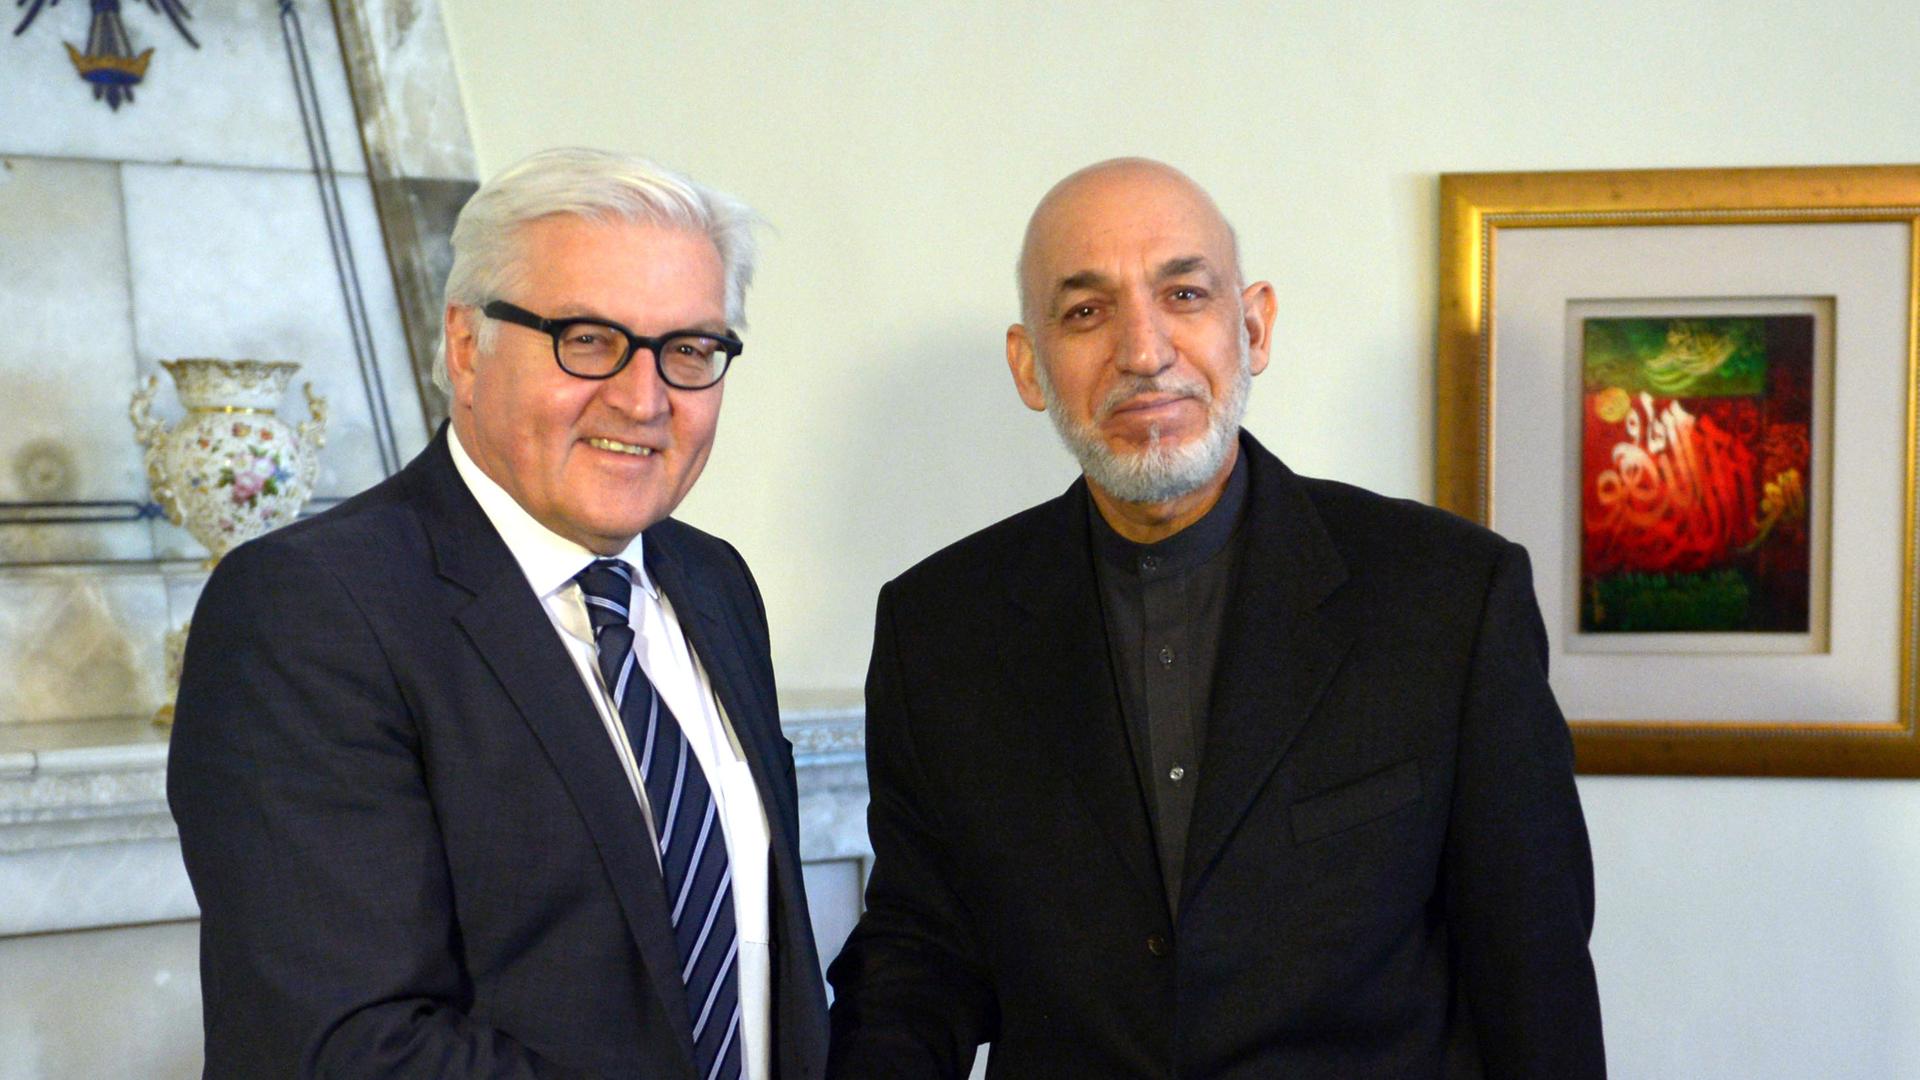 Außenminister Frank-Walter Steinmeier (SPD) und Afghanistans Präsident Hamid Karsai schütteln sich die Hände und schauen dabei in die Kamera.